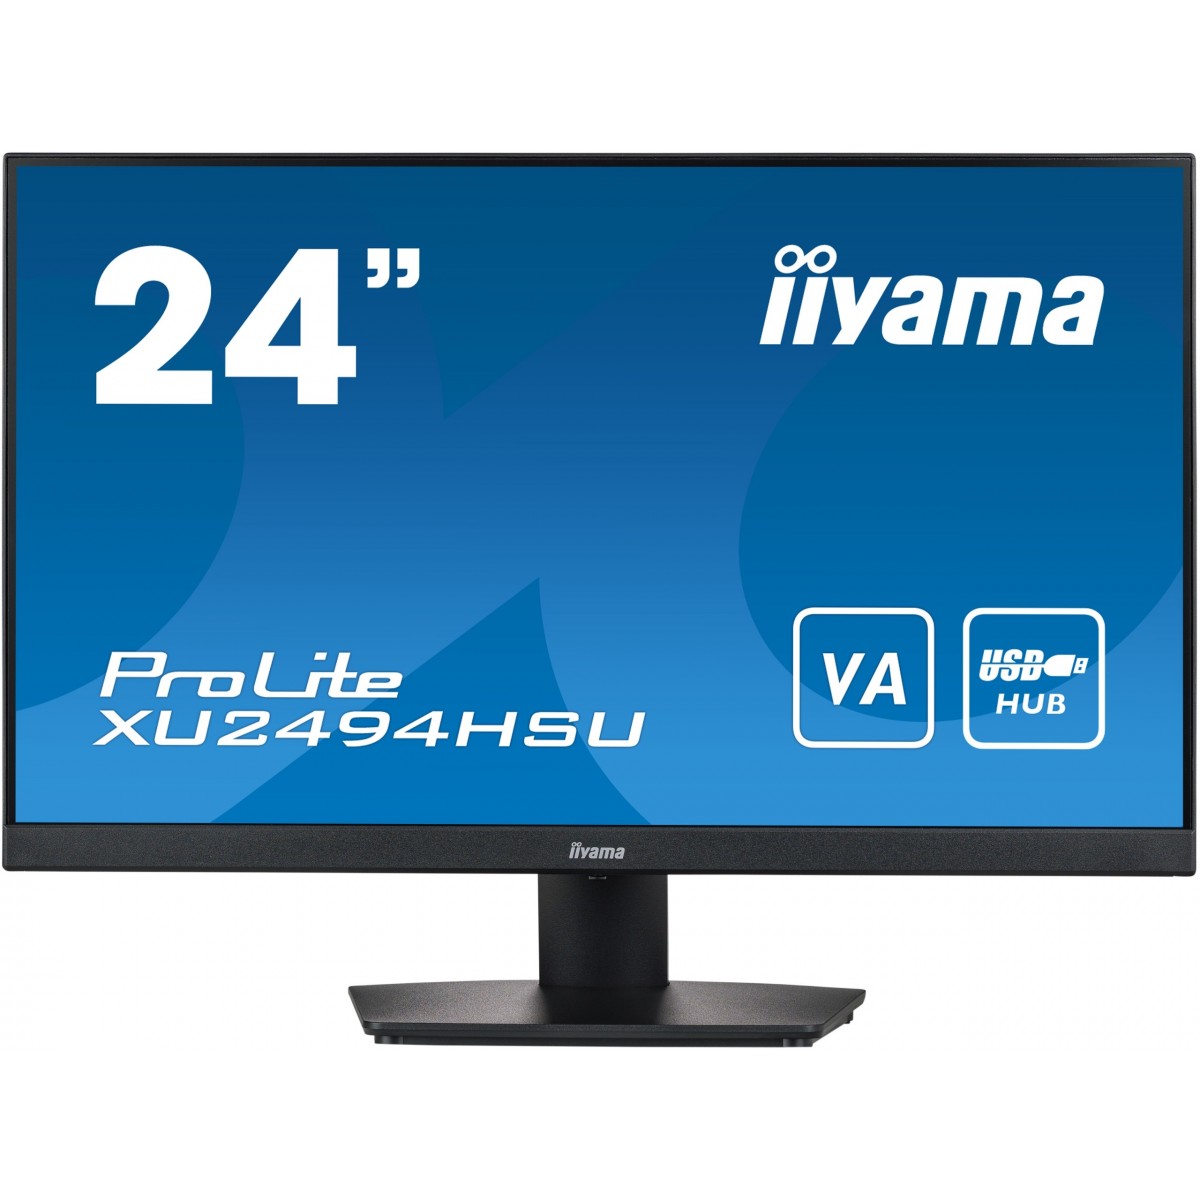 Iiyama 24i ETE VA-panel 1920x1080 4ms 250cd-m Speakers - Flat Screen